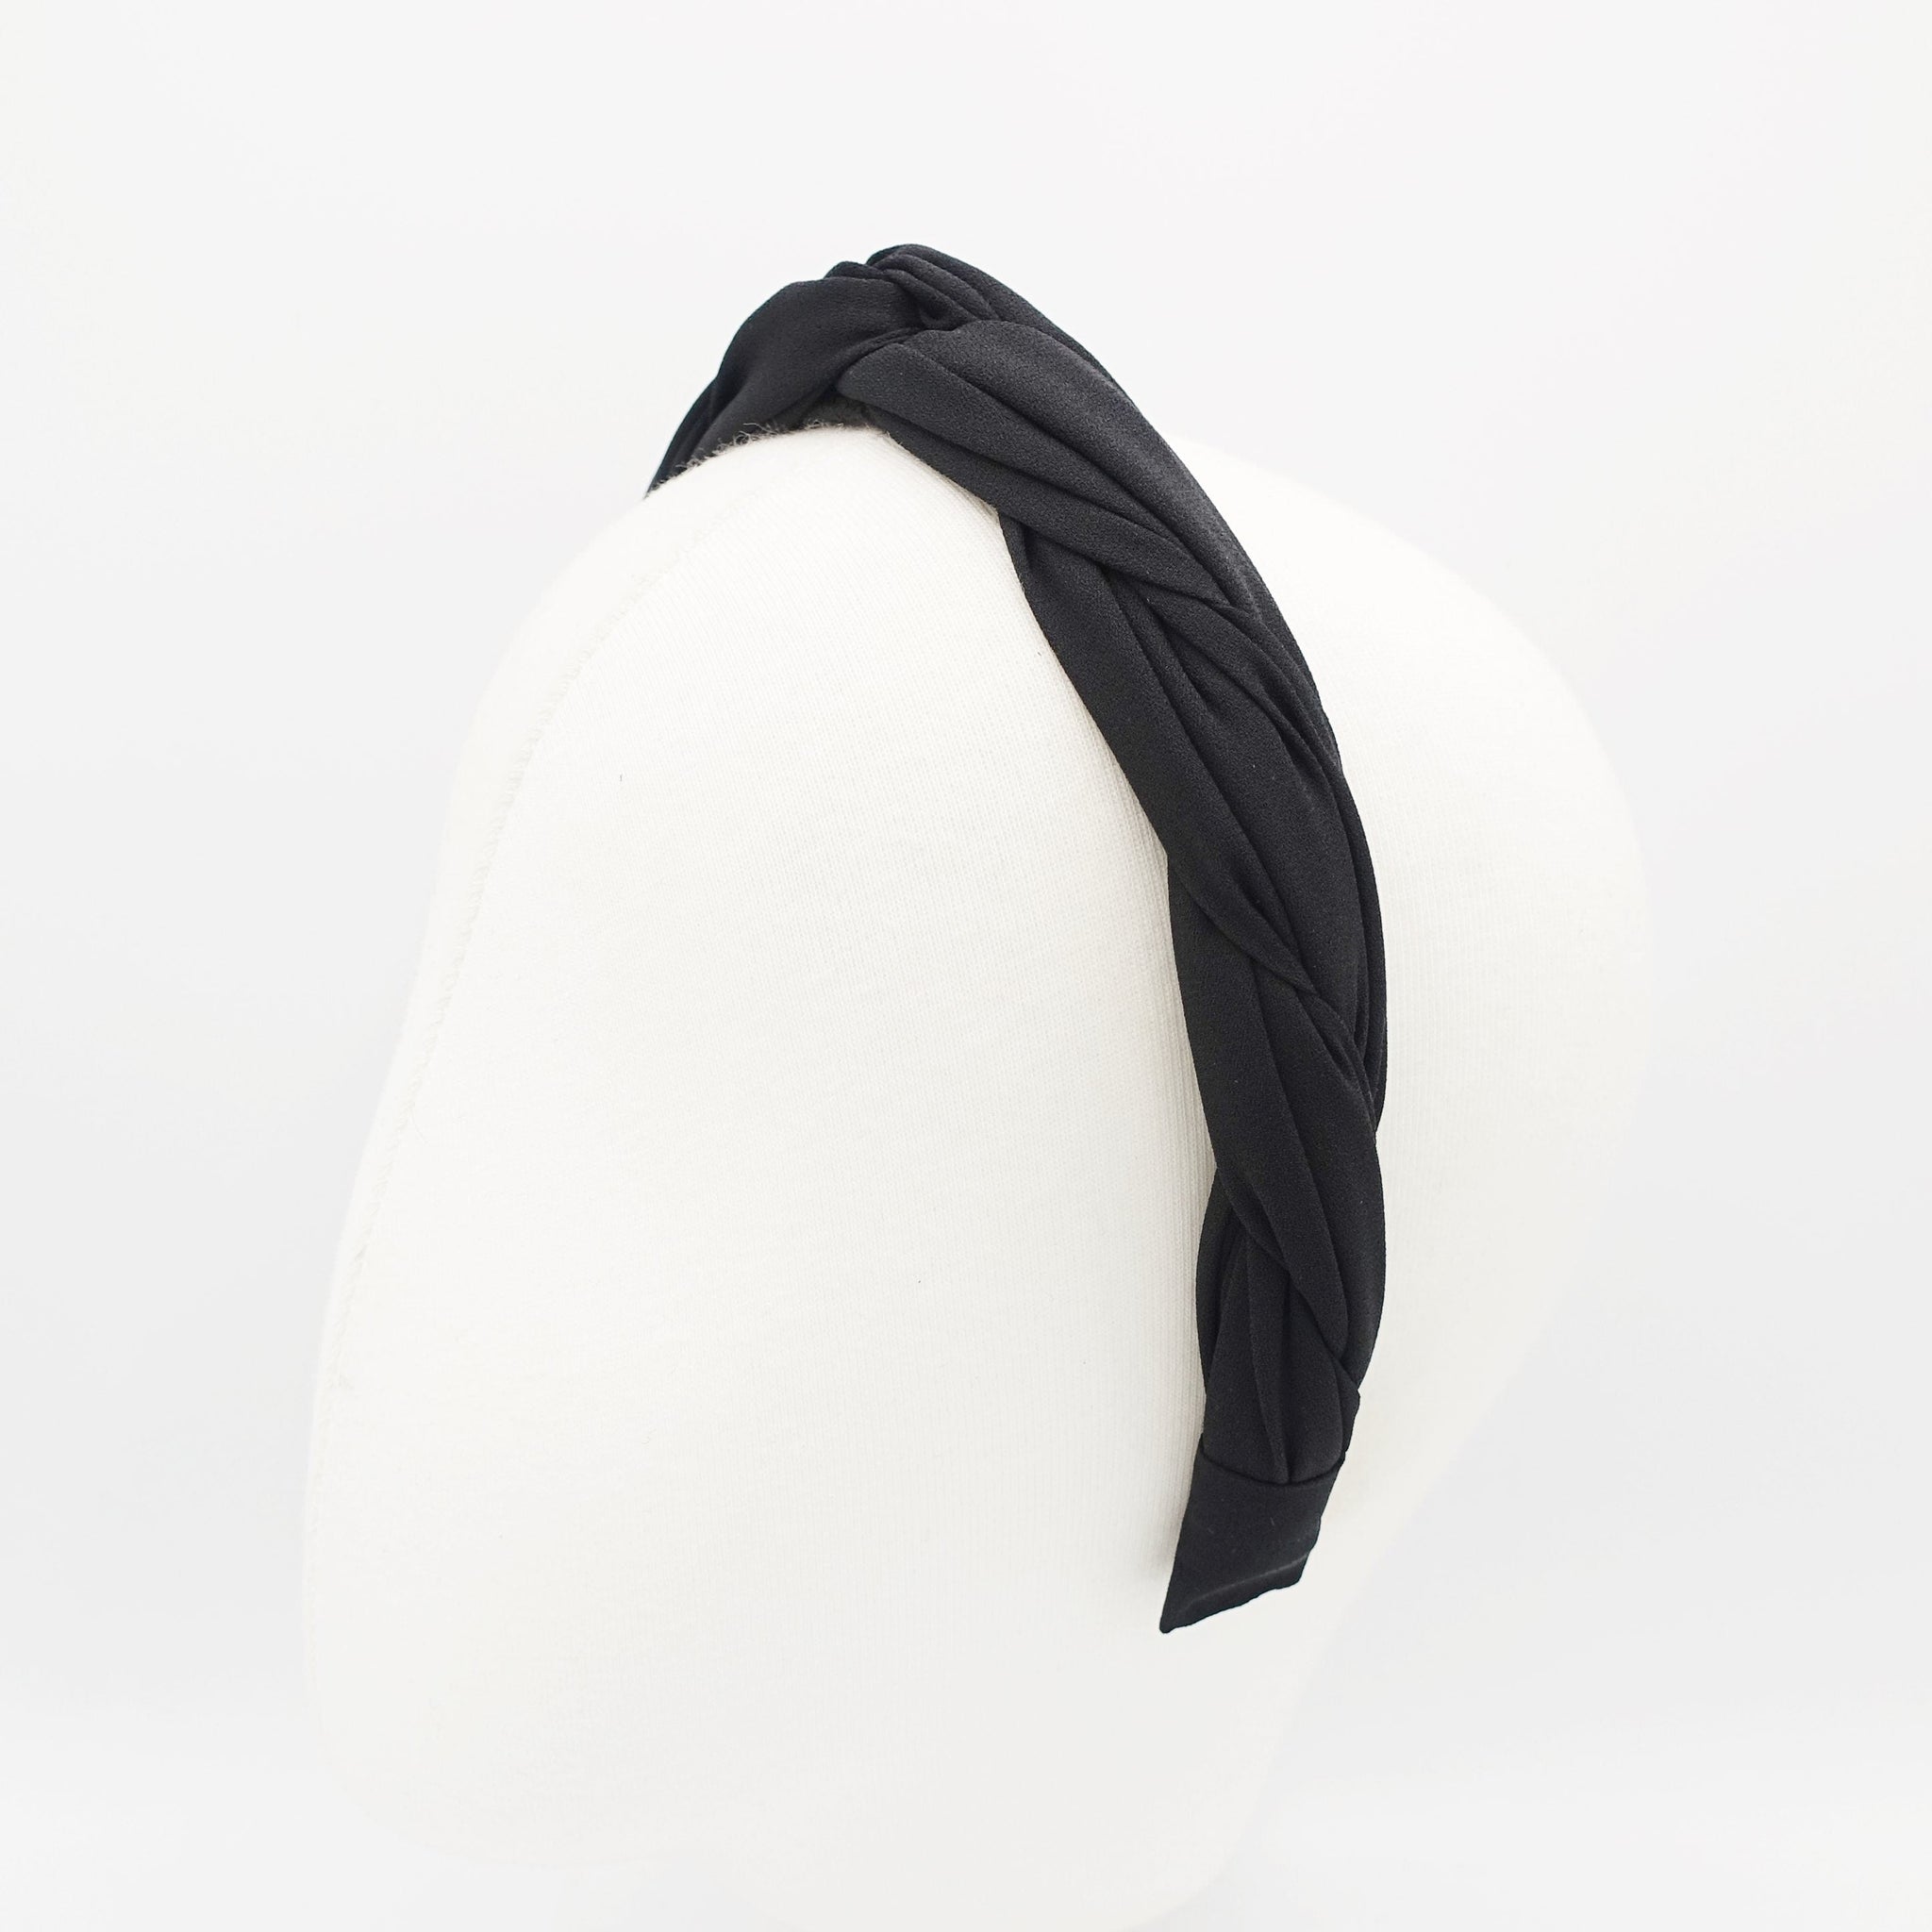 veryshine.com Navy chiffon cross 2 strand round braid headband for women